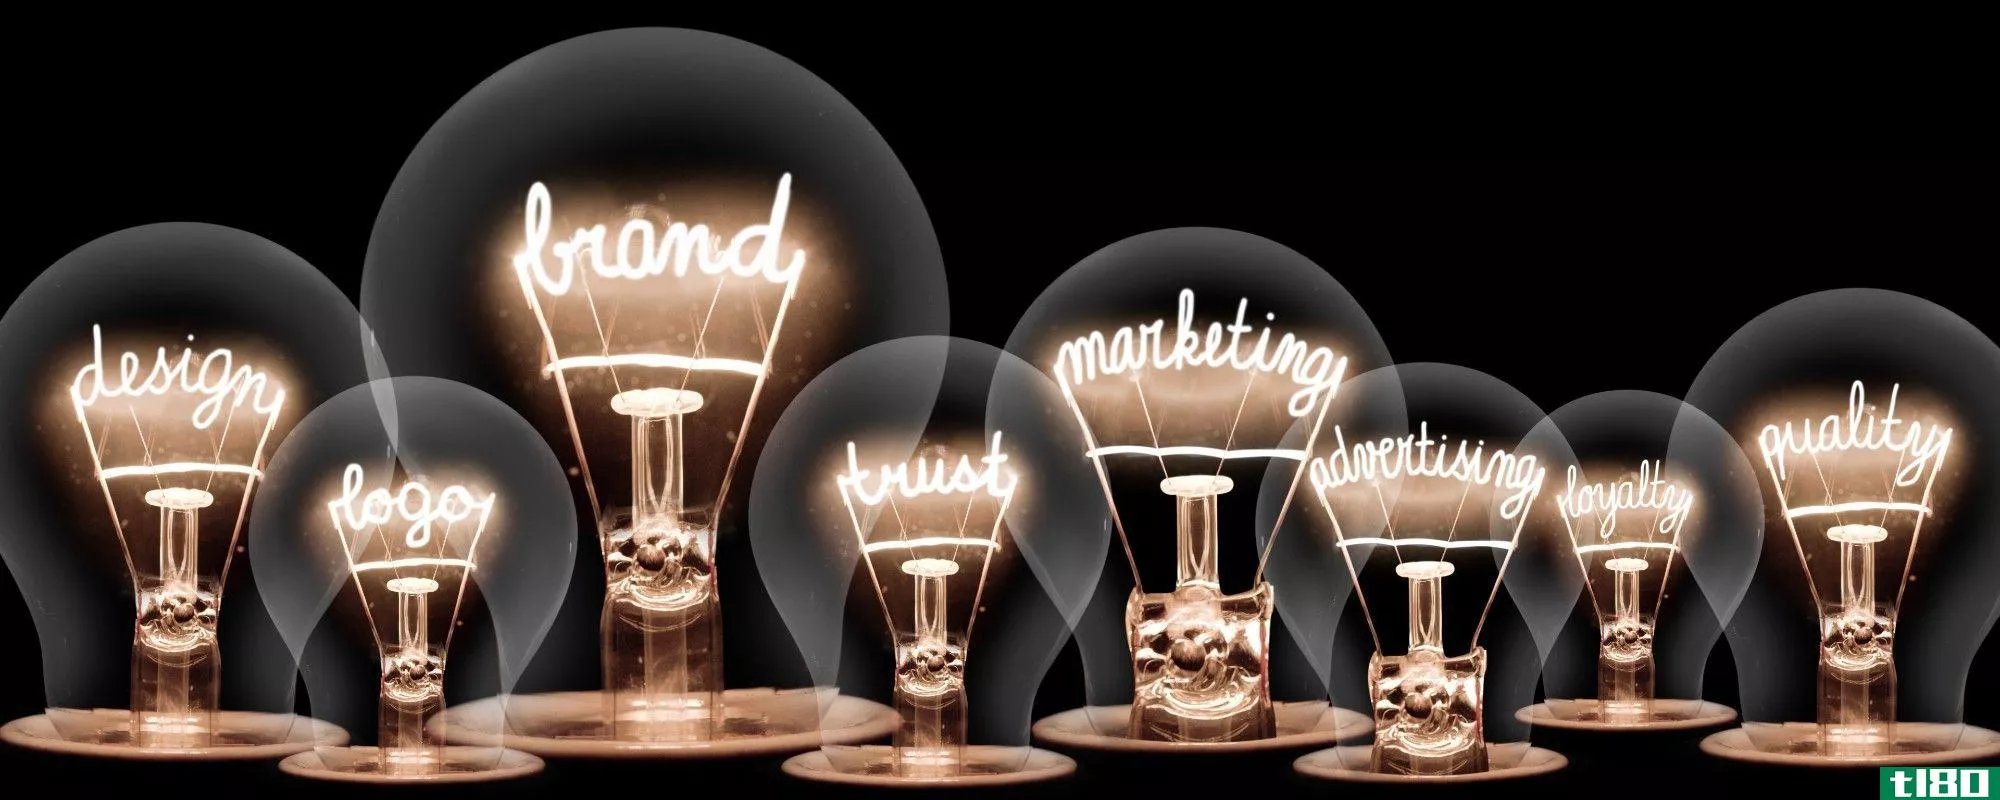 brands lightbulbs